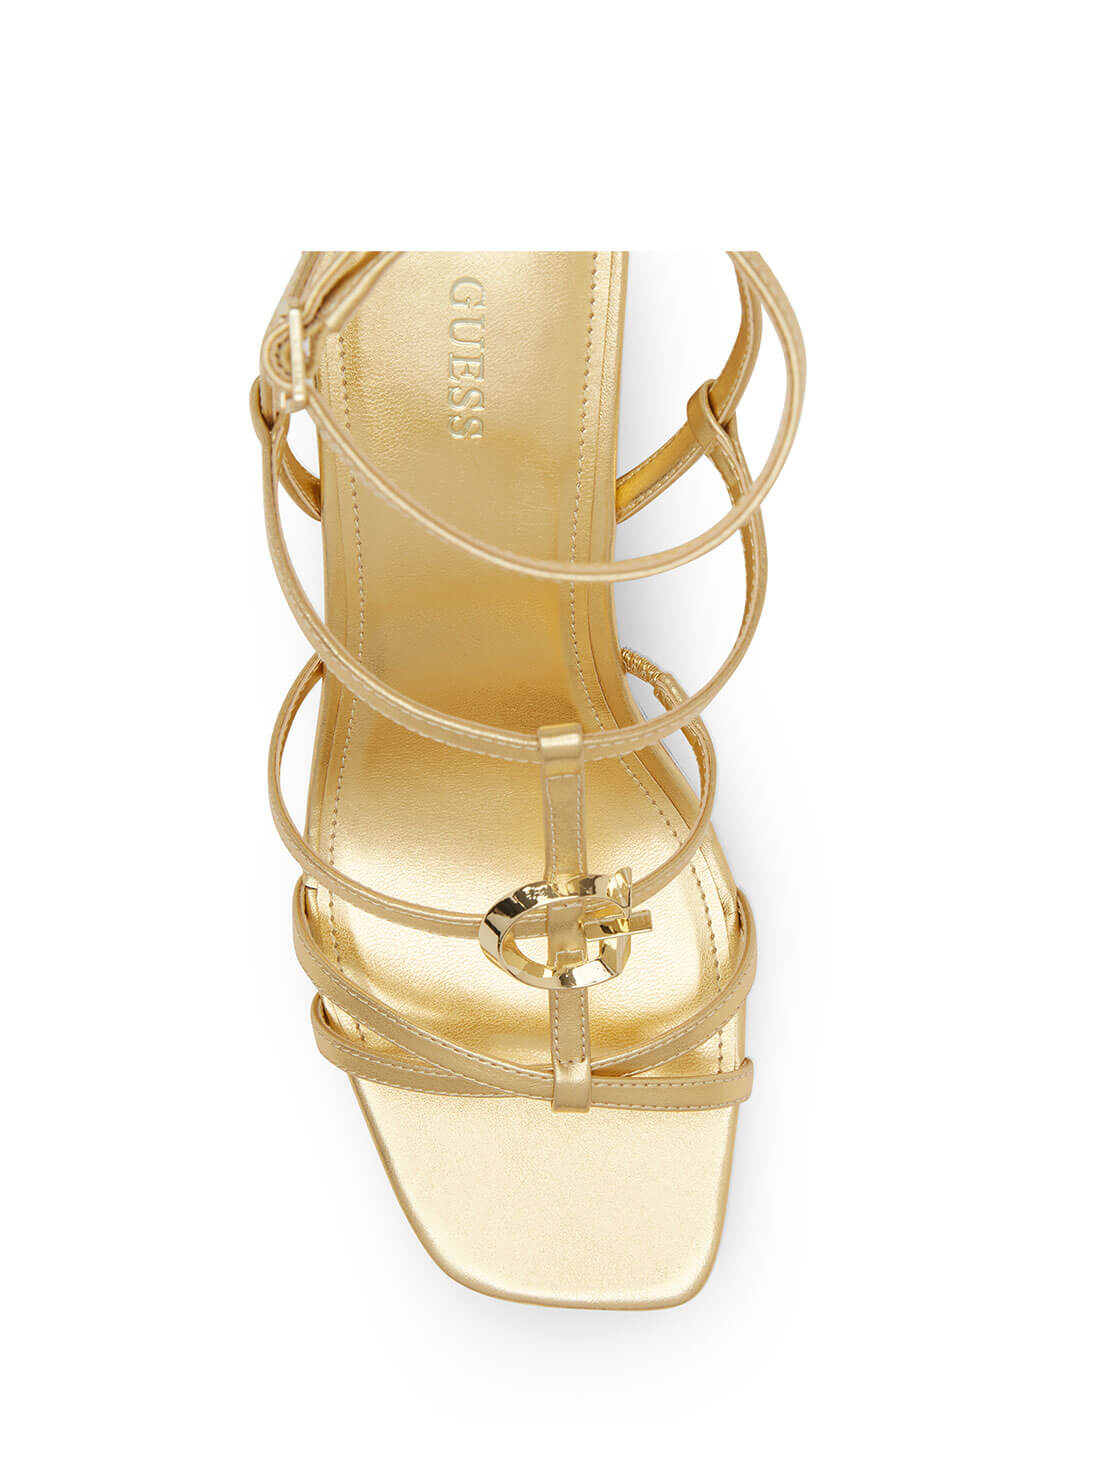 Gold Felia Wedge Heels | GUESS Women's Heels | top view